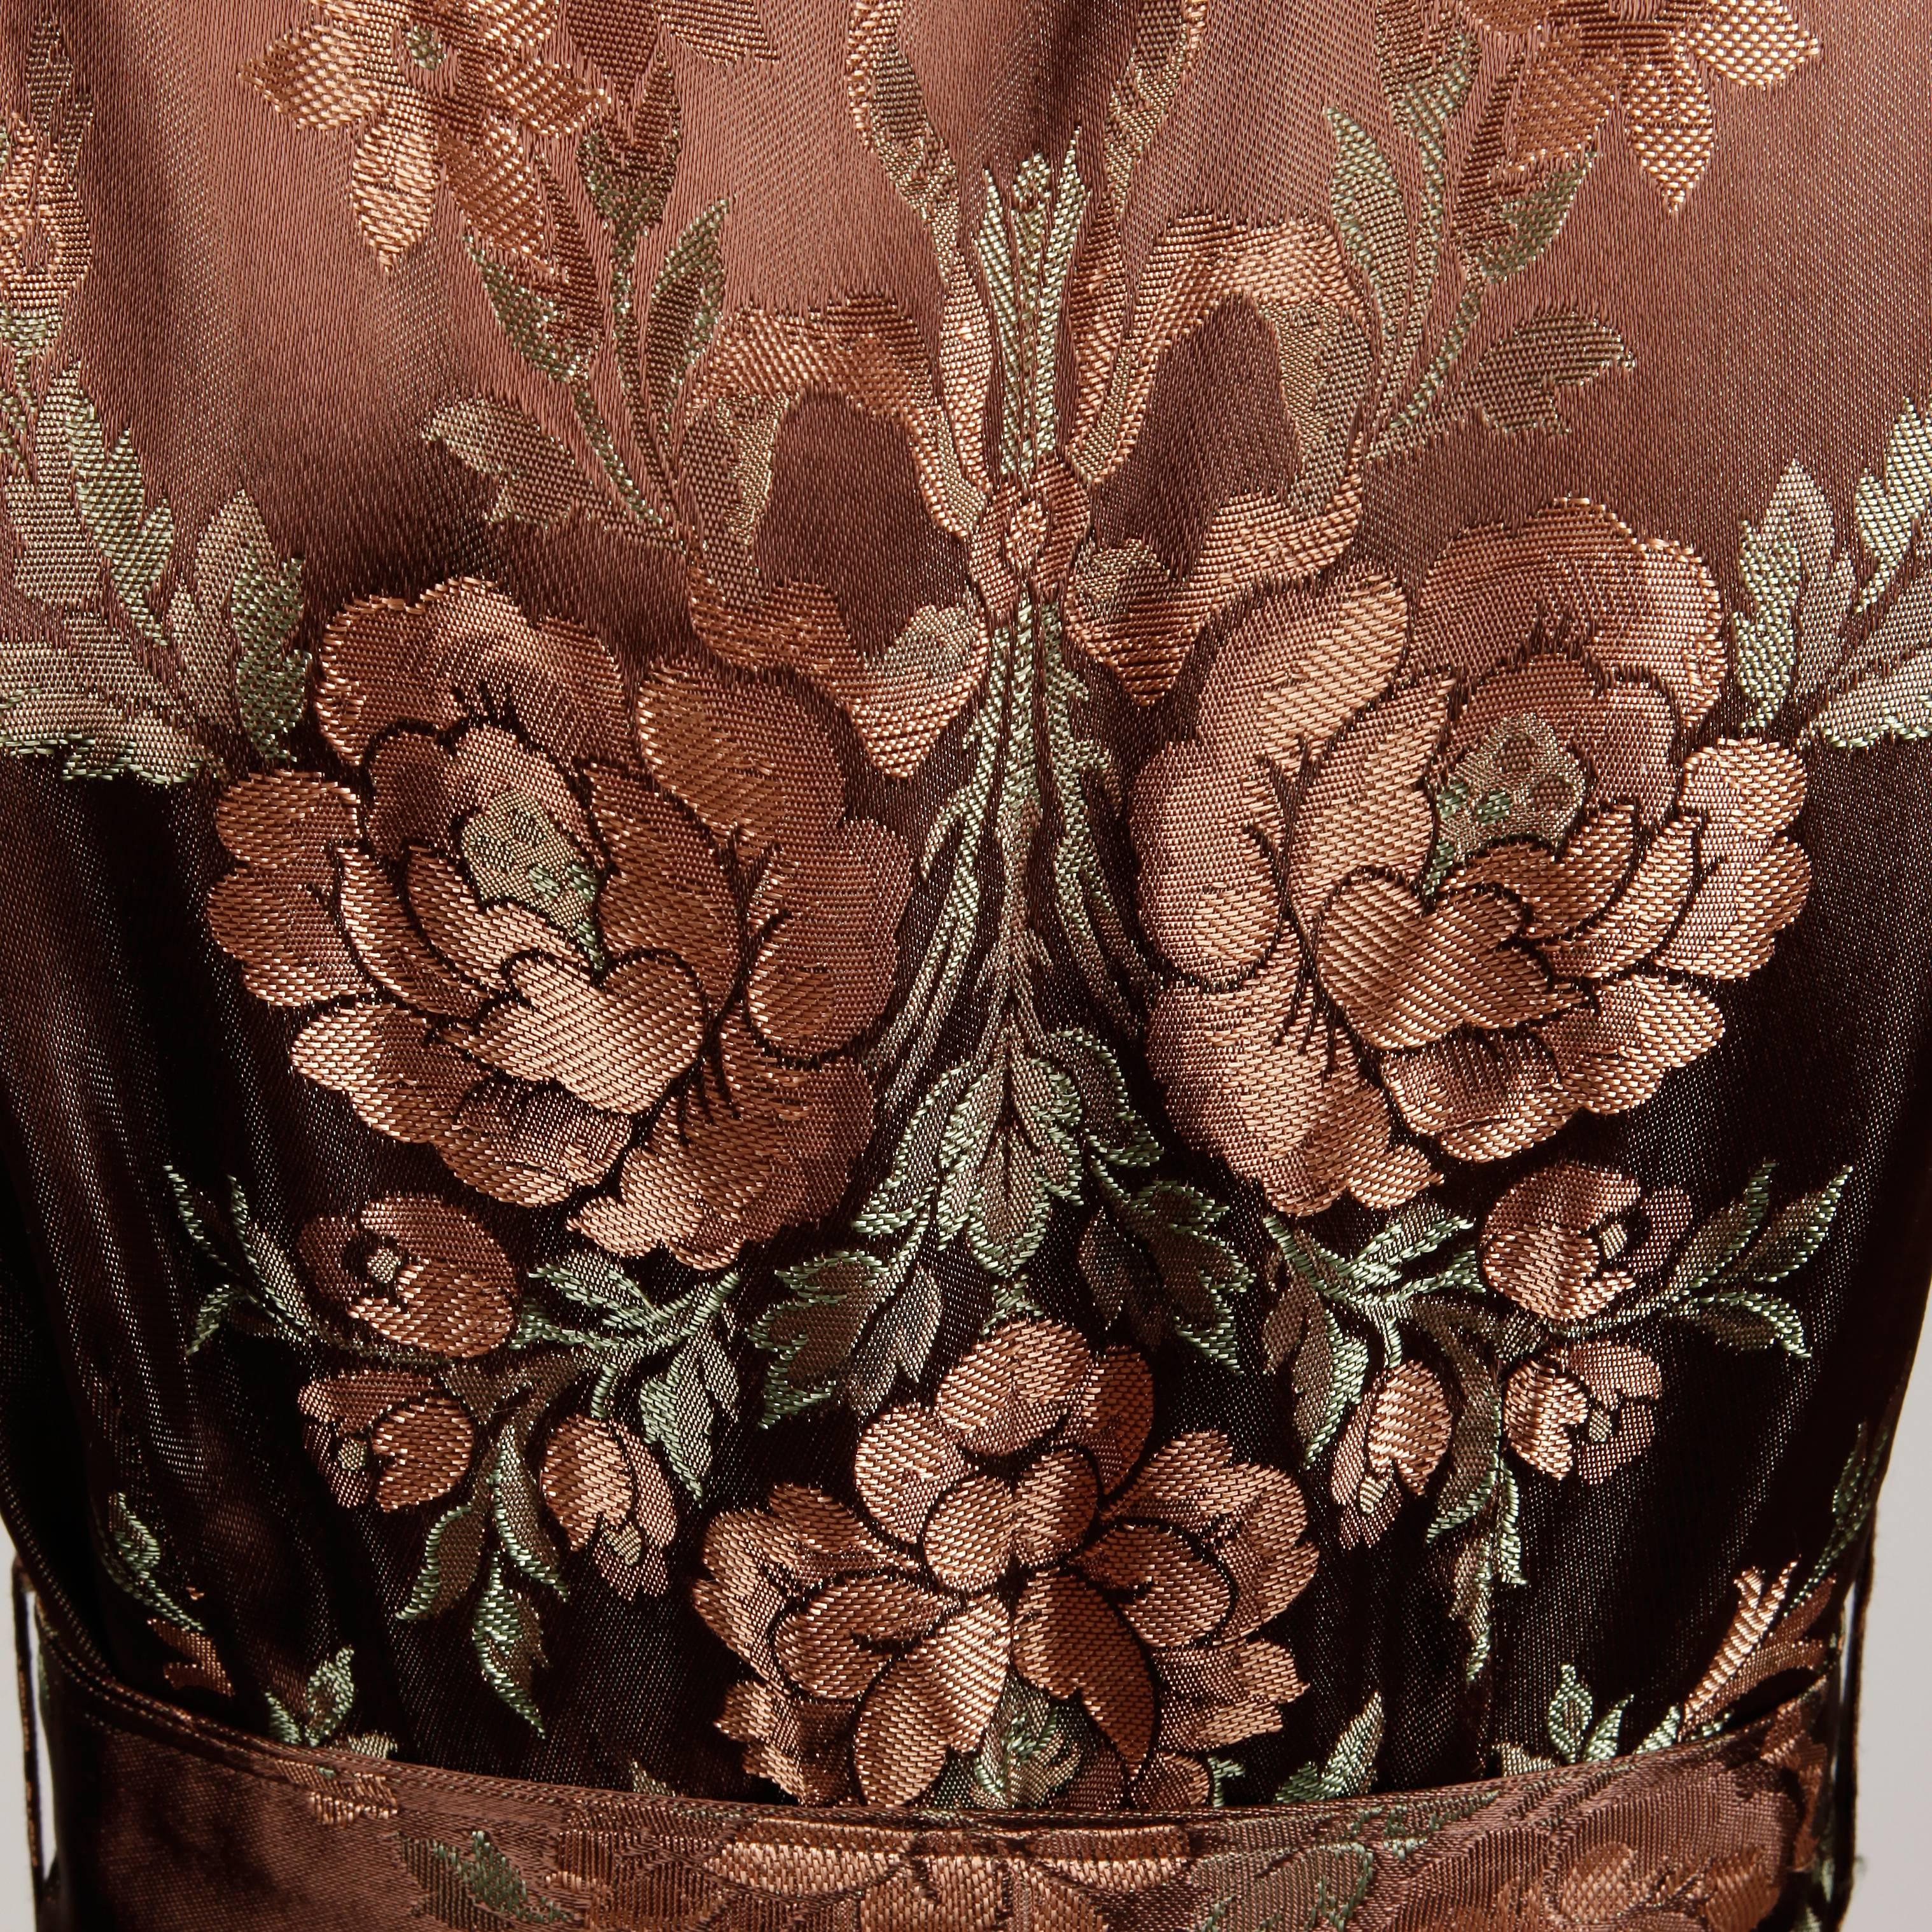 Black 1940s Vintage Copper Brown Floral Jacquard House Dress or Robe Duster Coat/ Belt